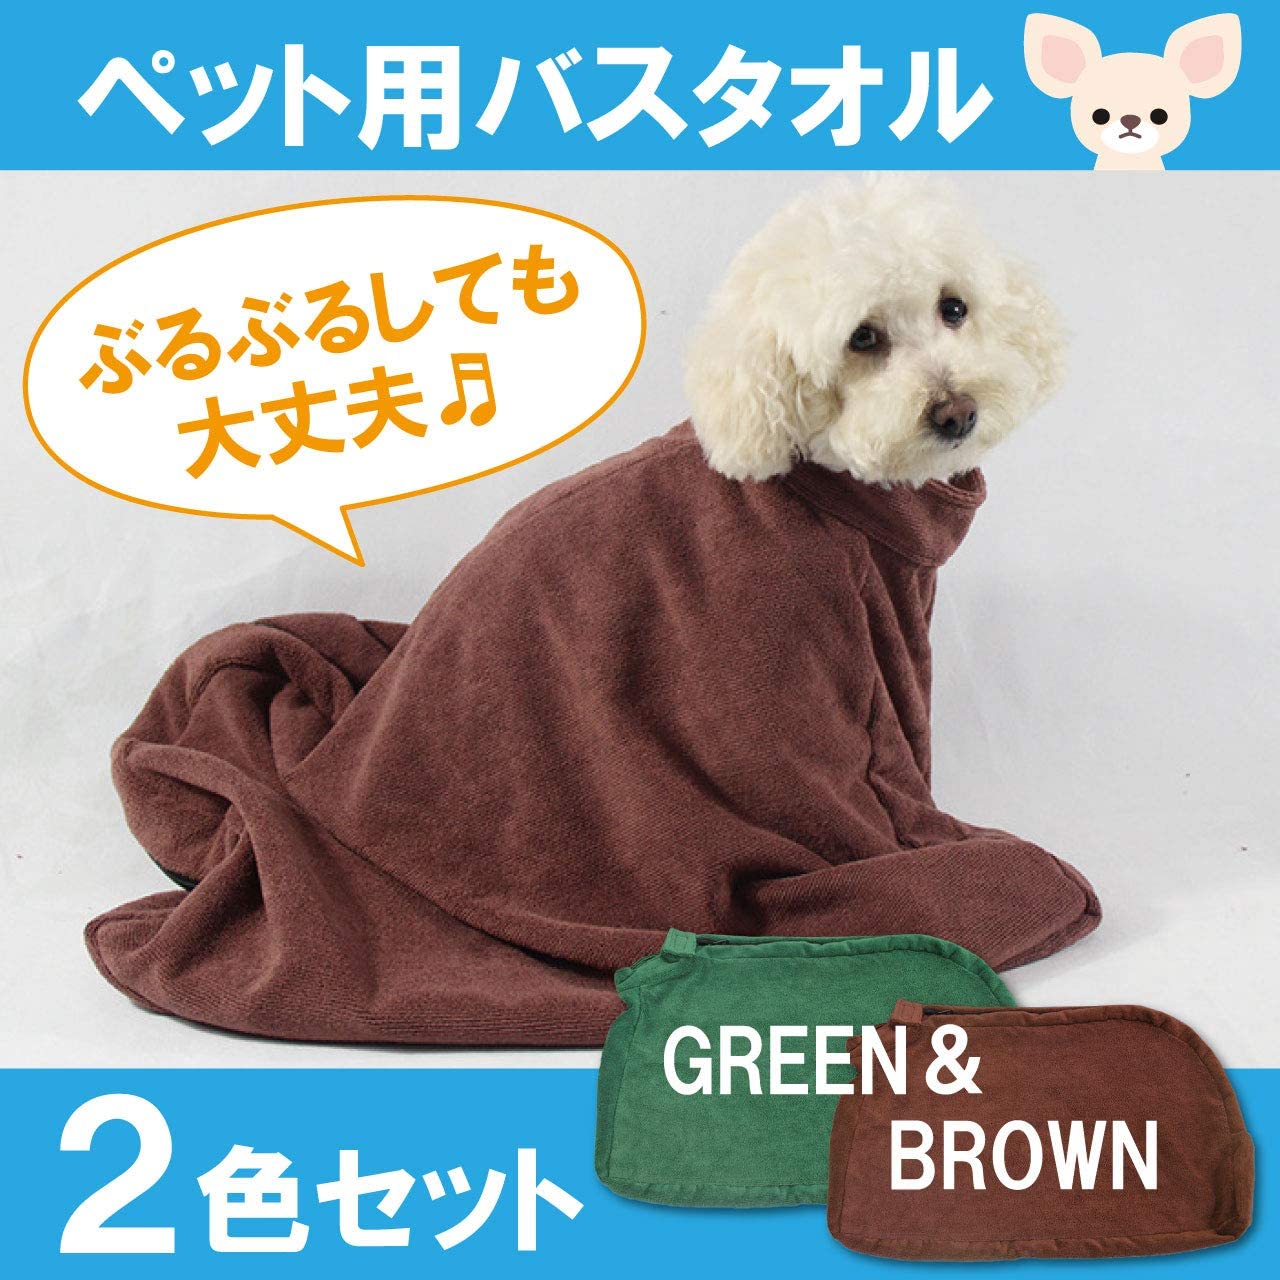 ペット用タオル バスタオル 袋状 吸水 速乾 犬 猫 マイクロファイバー 2色セット